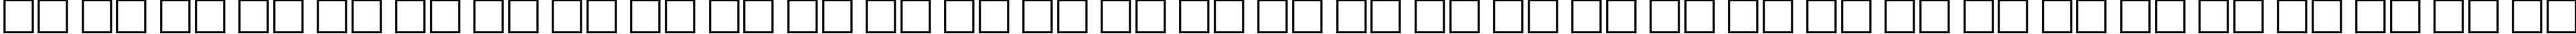 Пример написания русского алфавита шрифтом Calligraph